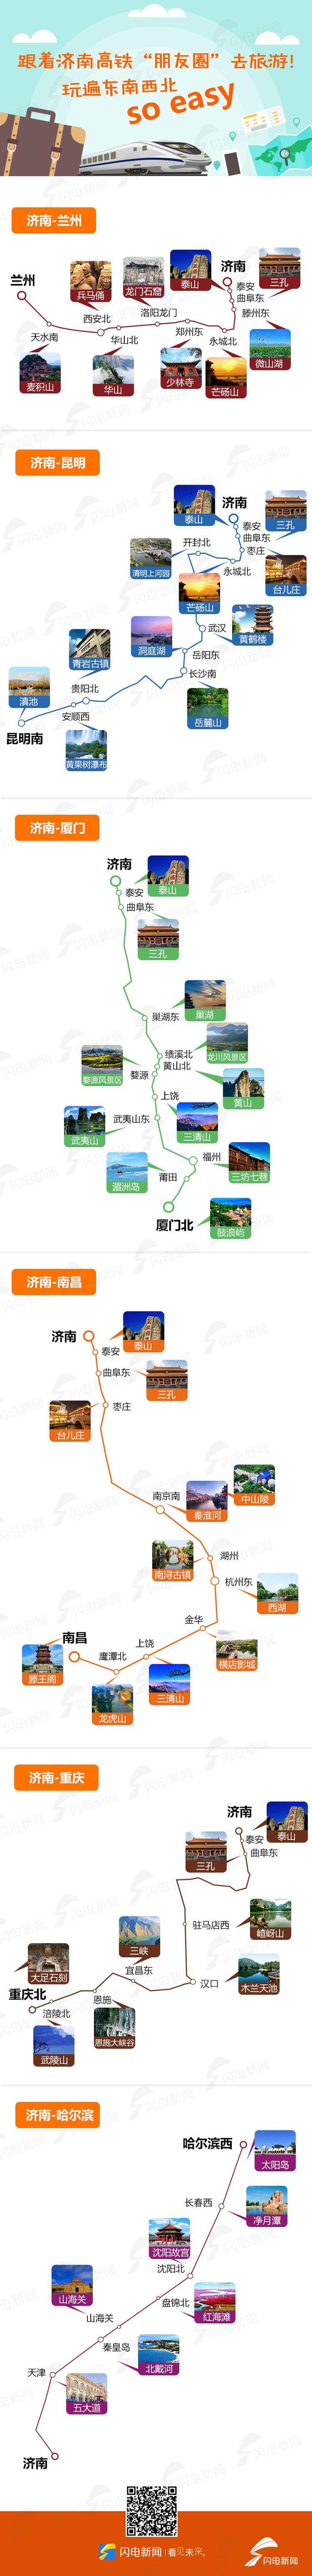 【山东新闻-文字列表】【走遍山东-济南】郑济高铁开工 未来2小时济南到郑州